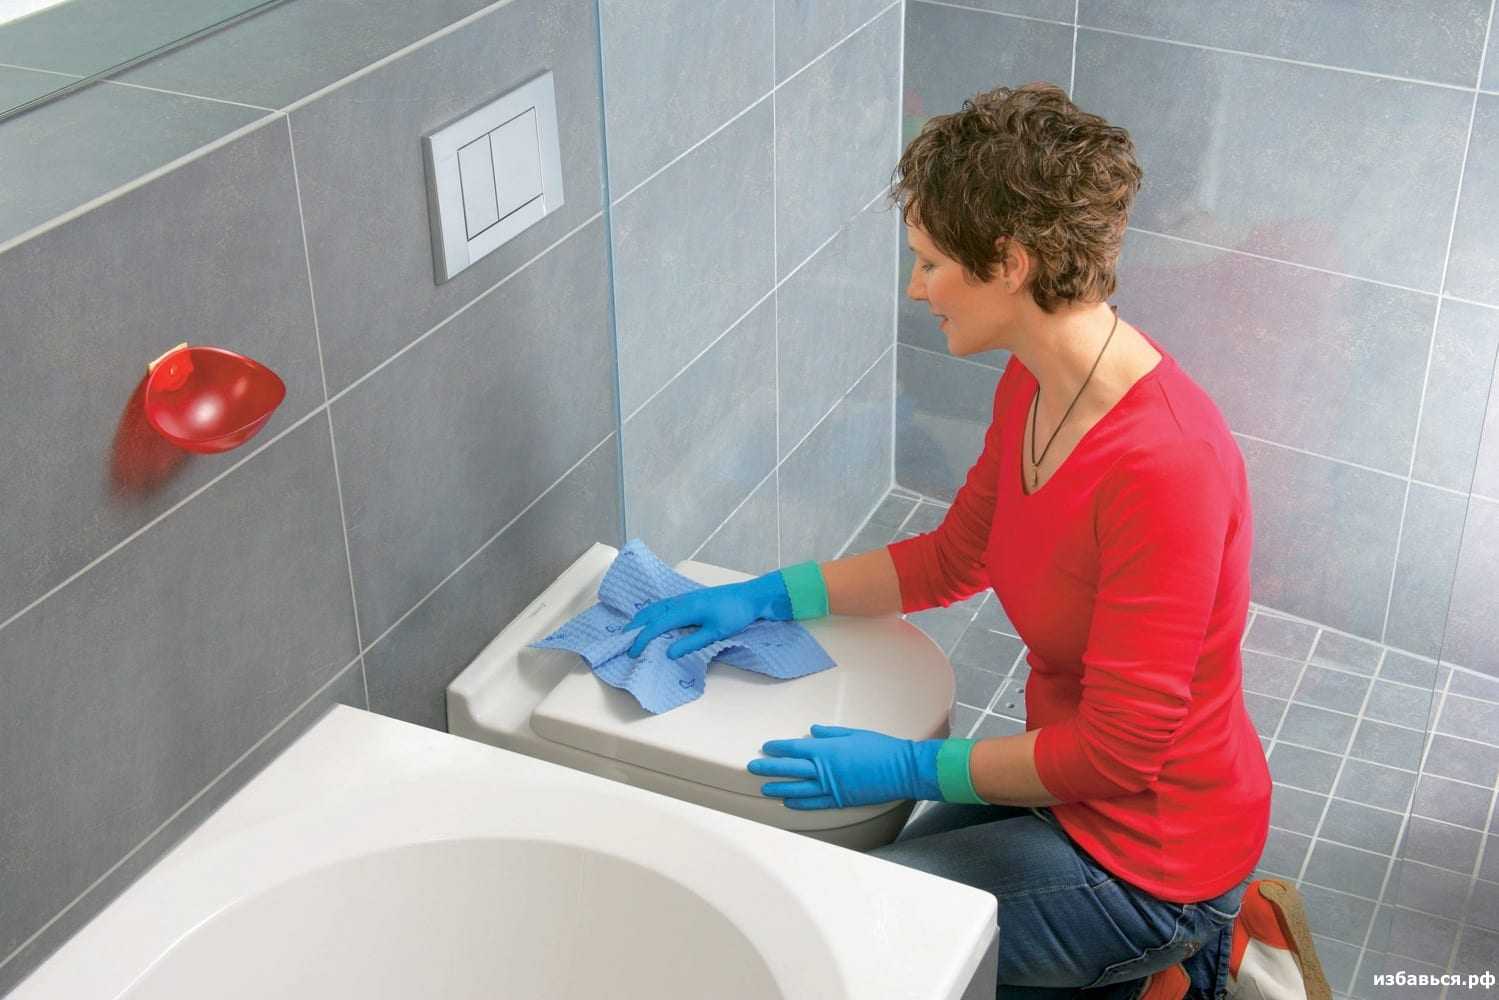 Пошаговая инструкция, как сделать стяжку пола в ванной своими руками. ошибки и рекомендации